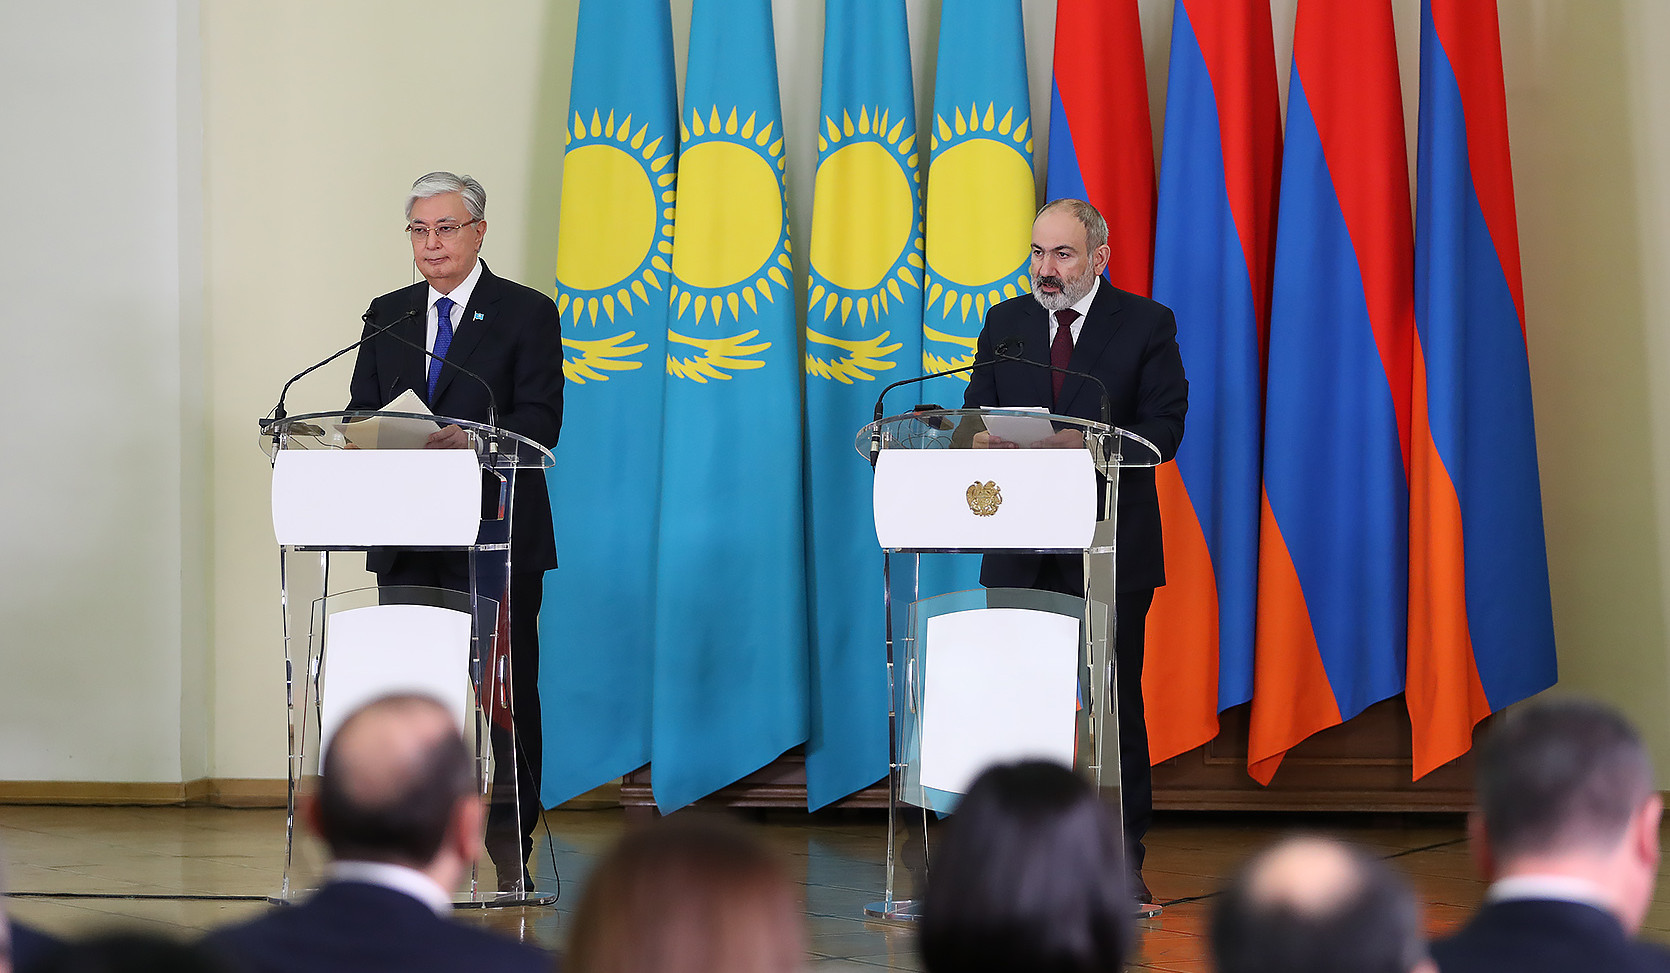 Qazaxıstan Ermənistana ixracı 350 milyon dollara çatdırmağa hazırdır: Tokayev